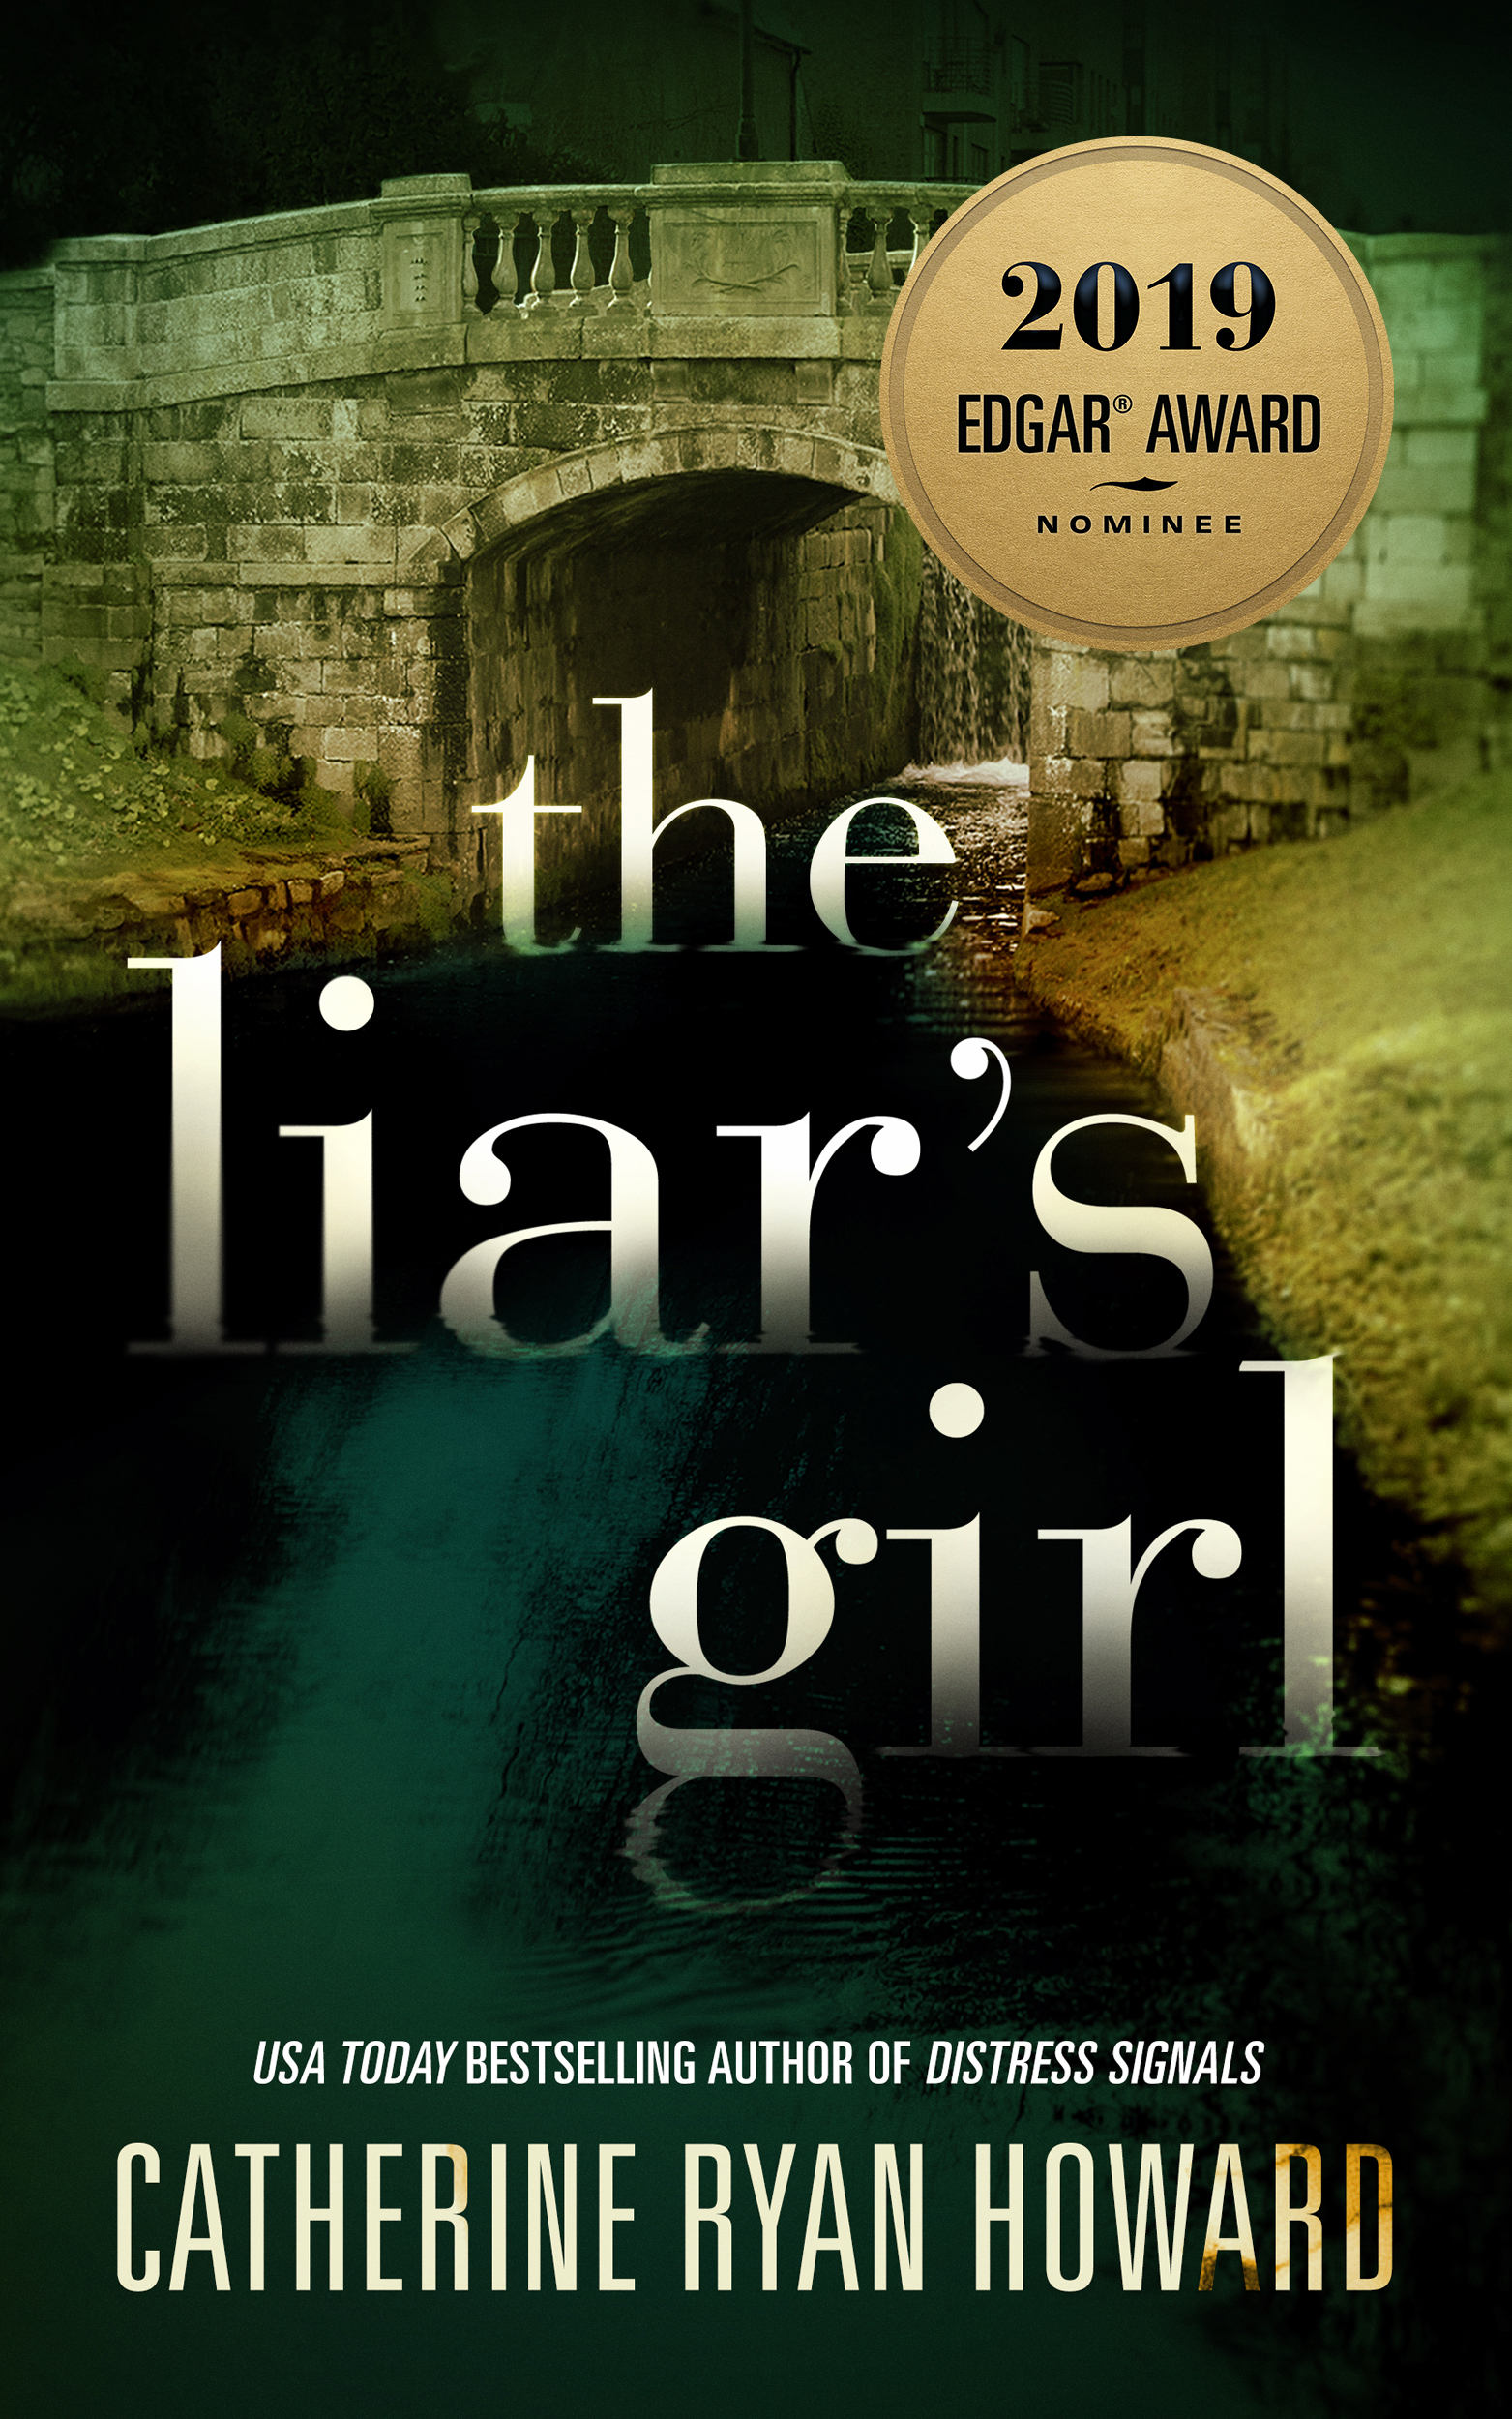 THE LIAR'S GIRL by Catherine Ryan Howard, a 2019 Edgar® Award Nominee For Best Novel